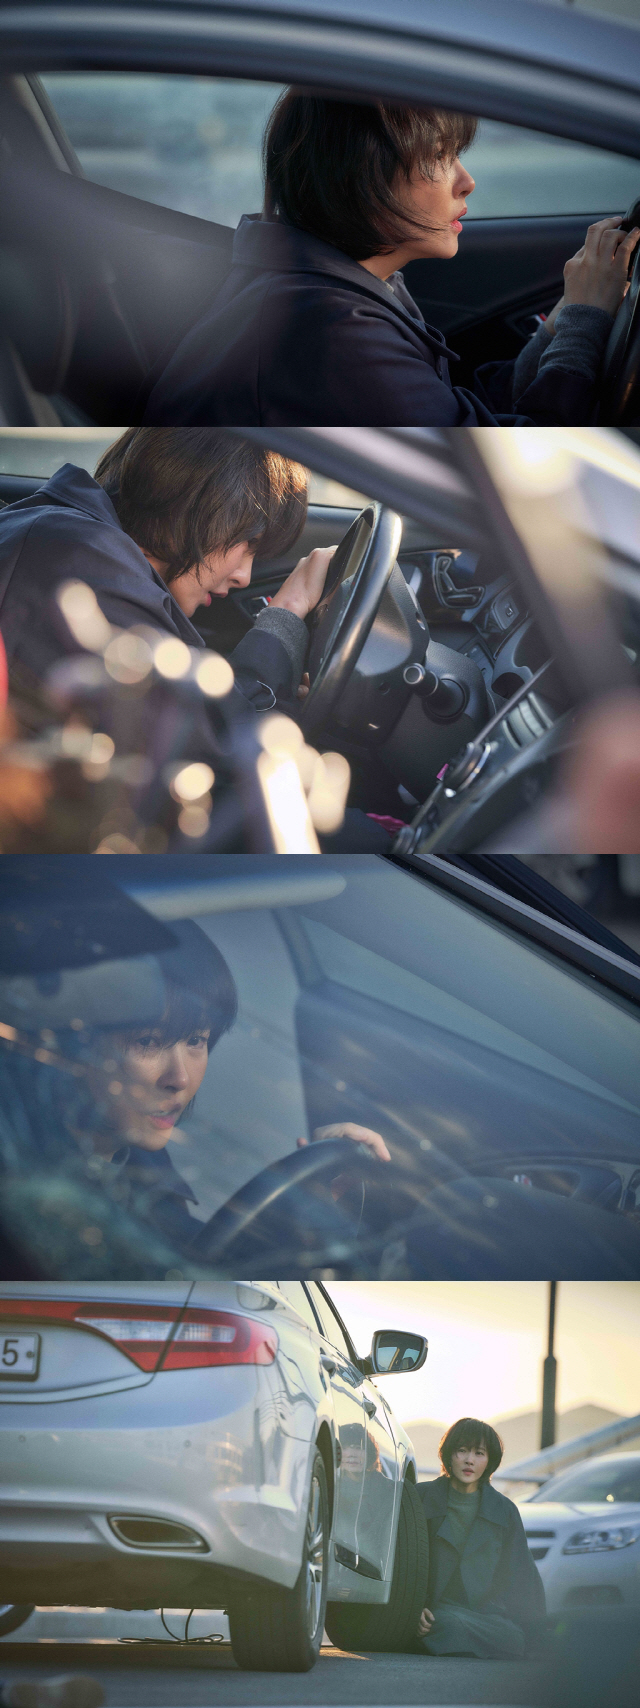 ‘붉은 달 푸른 해’ 김선아, 첫 회부터 교통사고 “충격적 열연 기대”